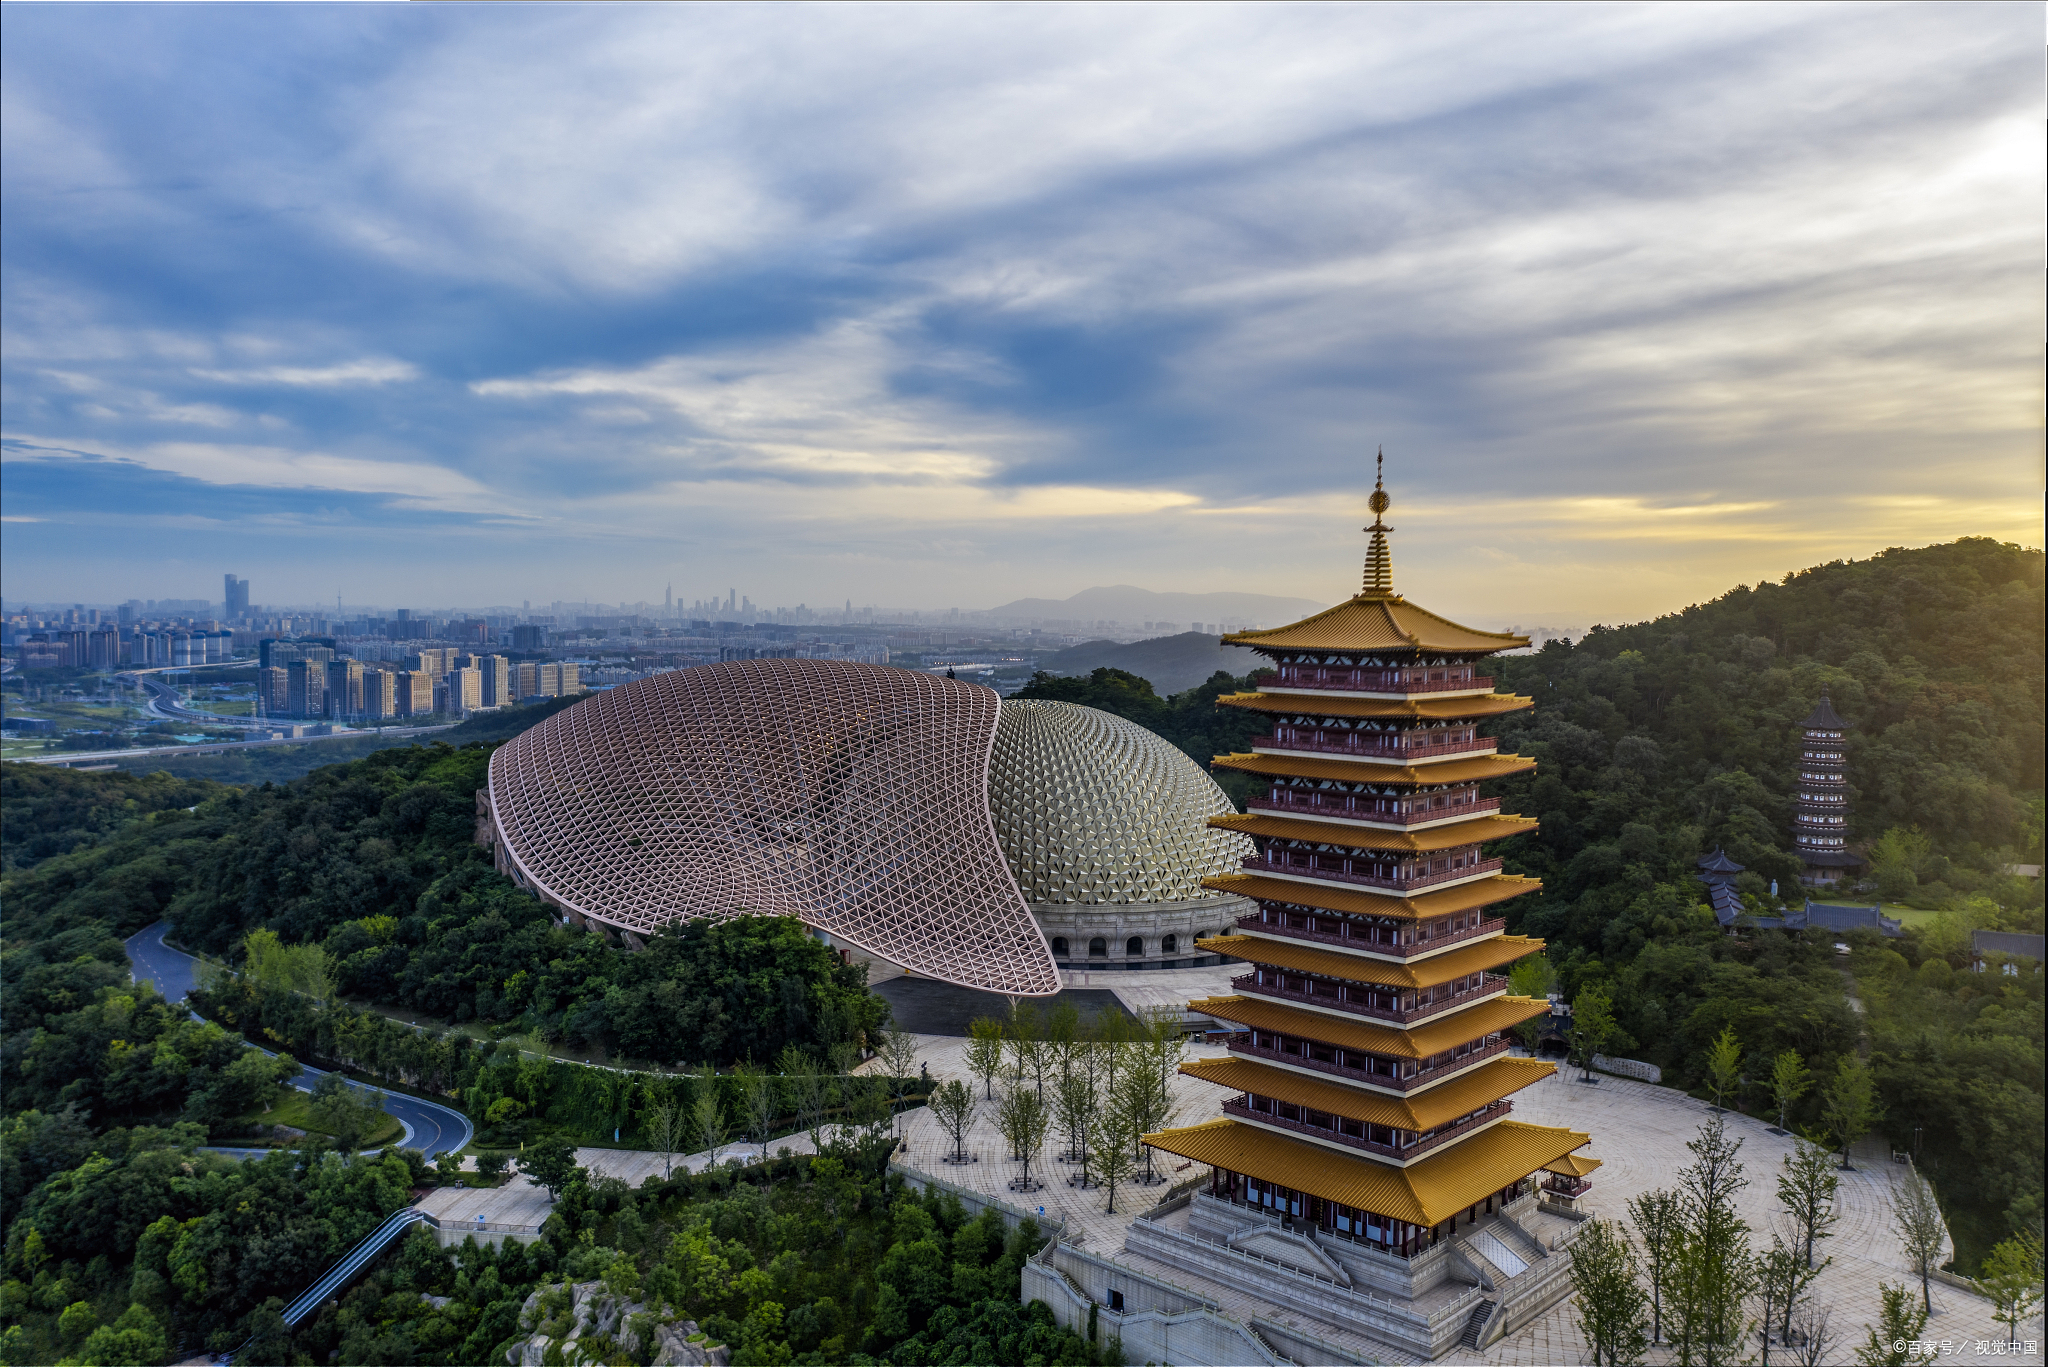 南京有许多值得一游的旅游景点,以下是南京旅游景点排行榜前十名: 1